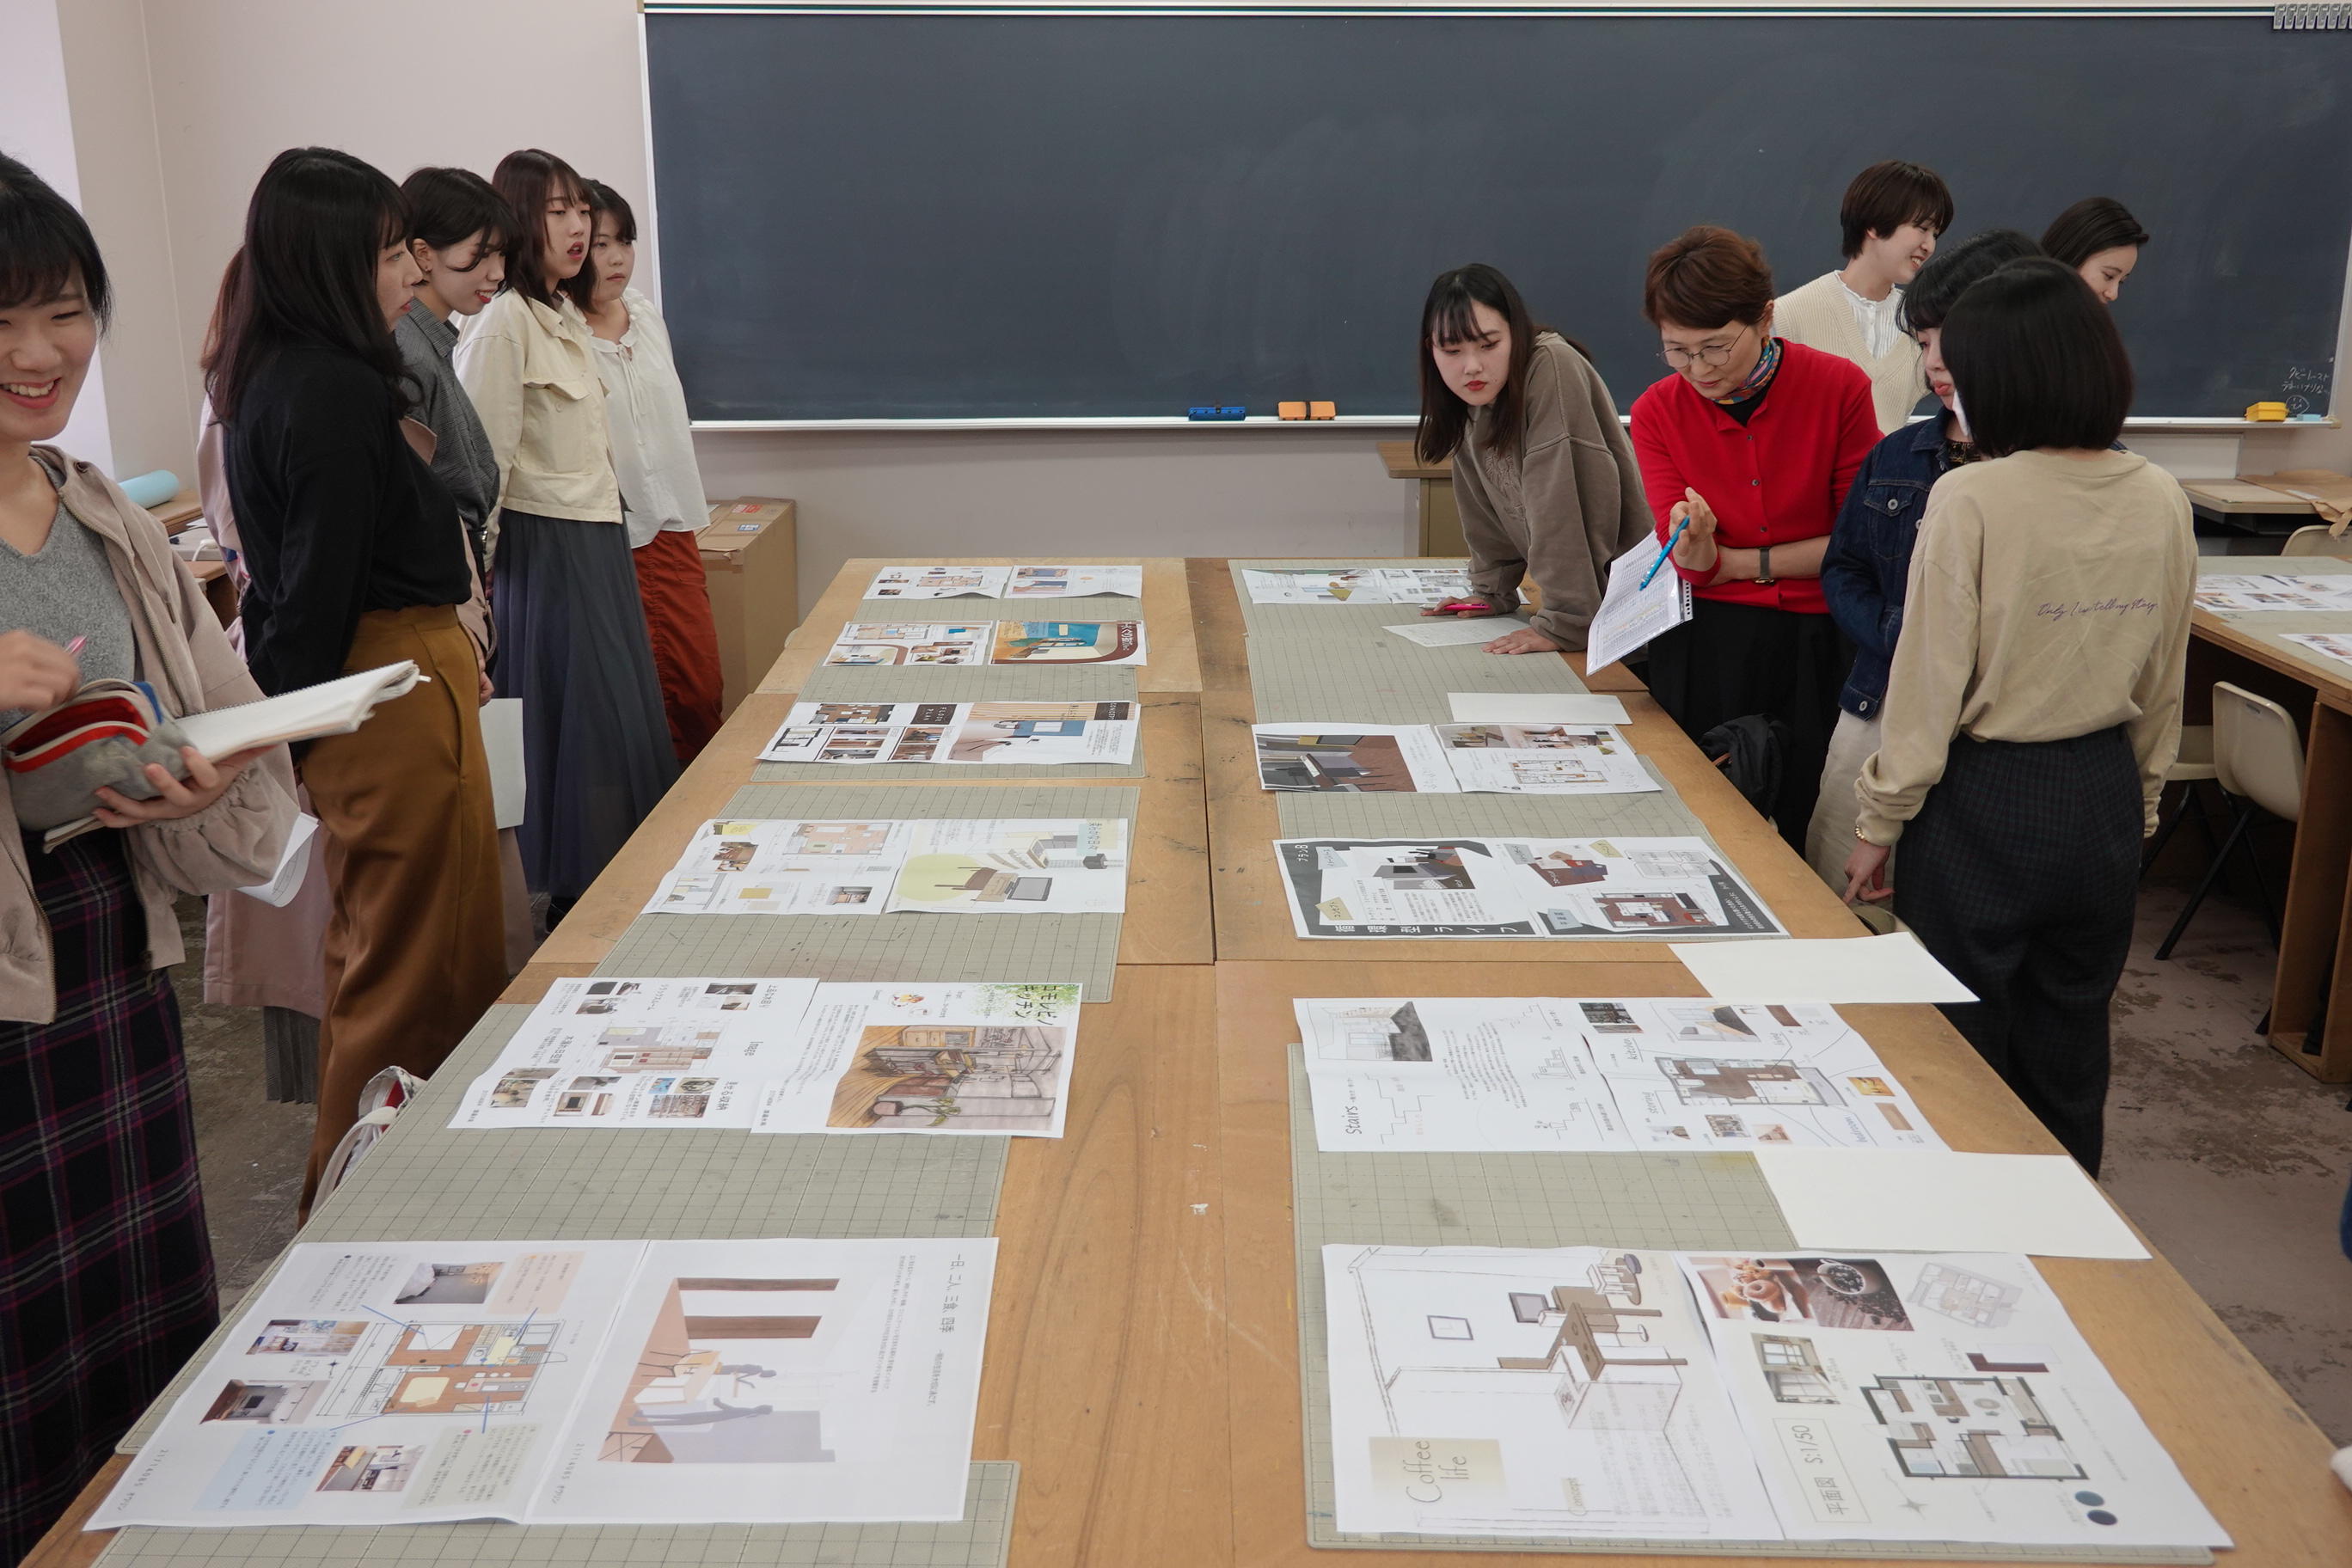 駒沢女子大学の学生が新築賃貸集合住宅のコンセプトやデザインを企画・提案 -- 産学連携課題「コマジョクリエ」完成披露内覧会および完成式典のお知らせ